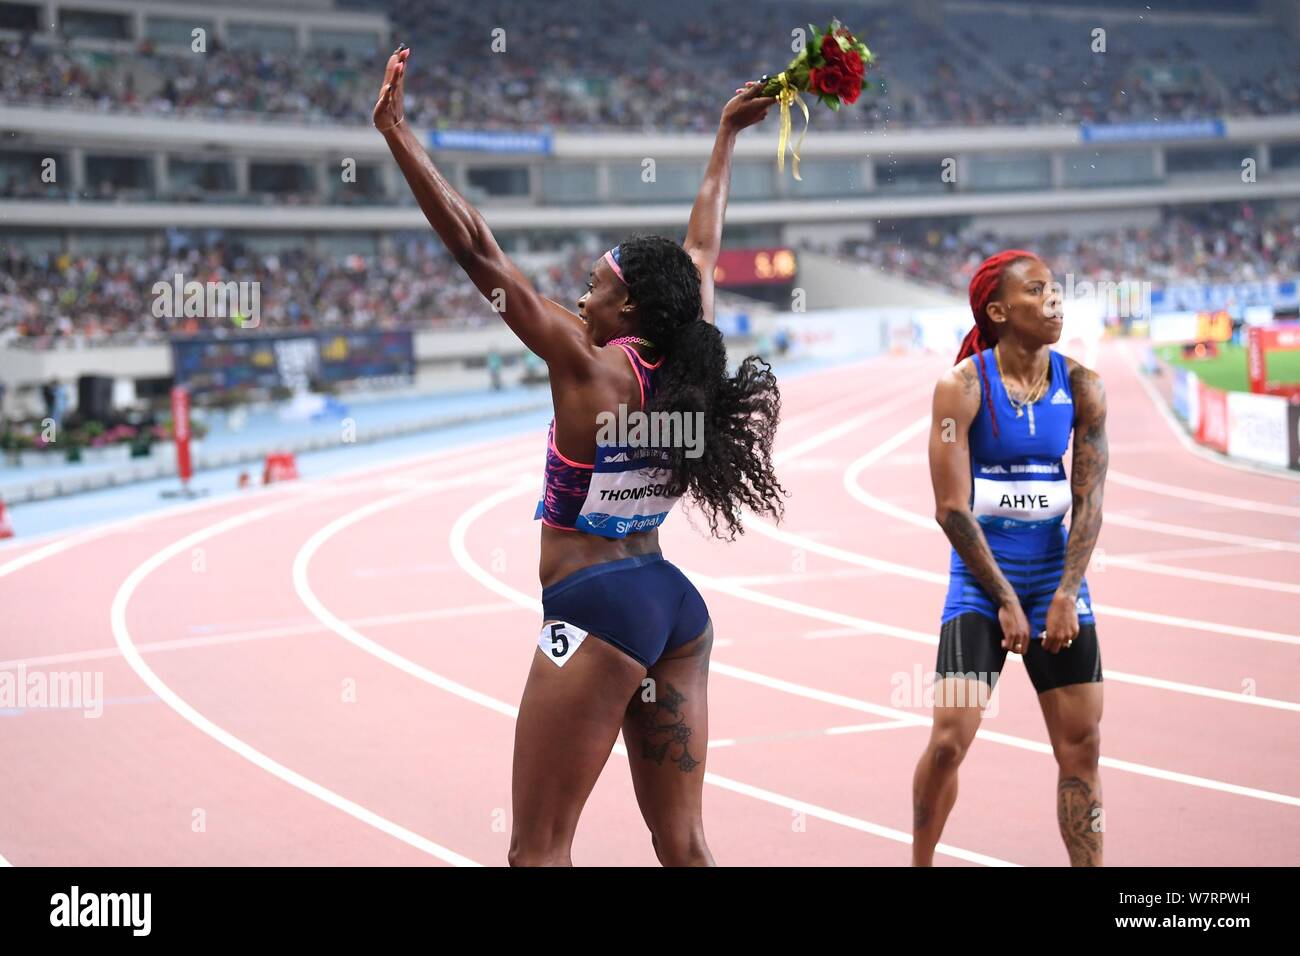 Elaine Thompson de la Jamaïque, gauche, célèbre après avoir remporté le women's 100m au cours de l'IAAF Diamond League 2017 de Shanghai à Shanghai, Chine, 13 mai 20 Banque D'Images